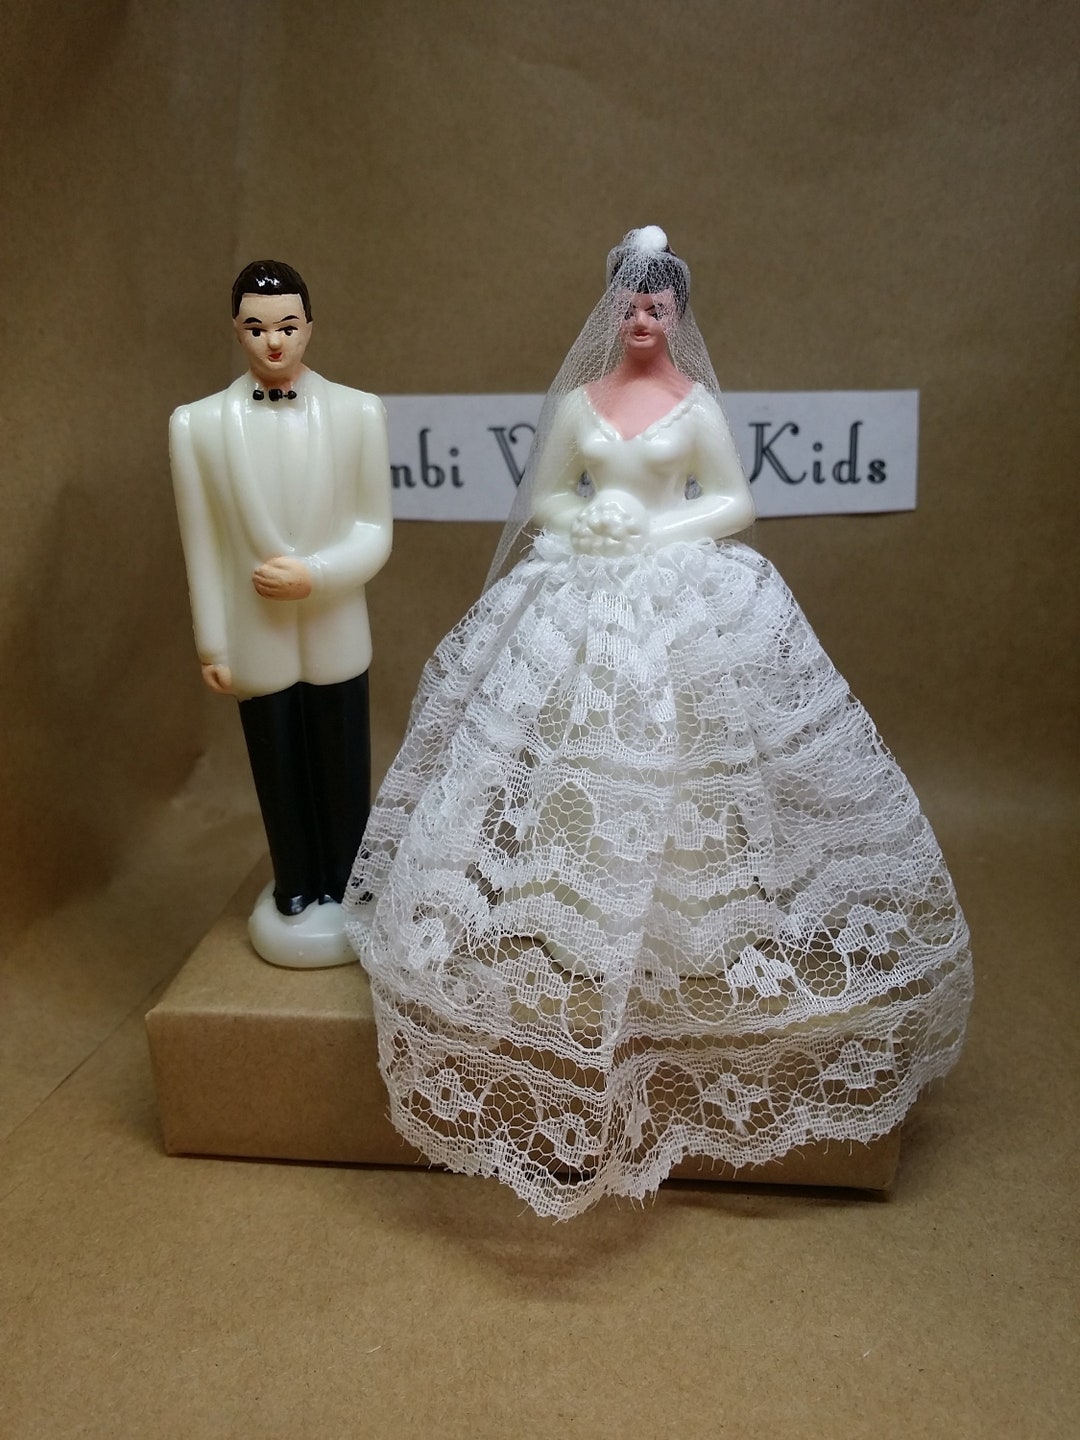 Vintage White Jacket Groom & Lace Bride Wedding Cake - Etsy